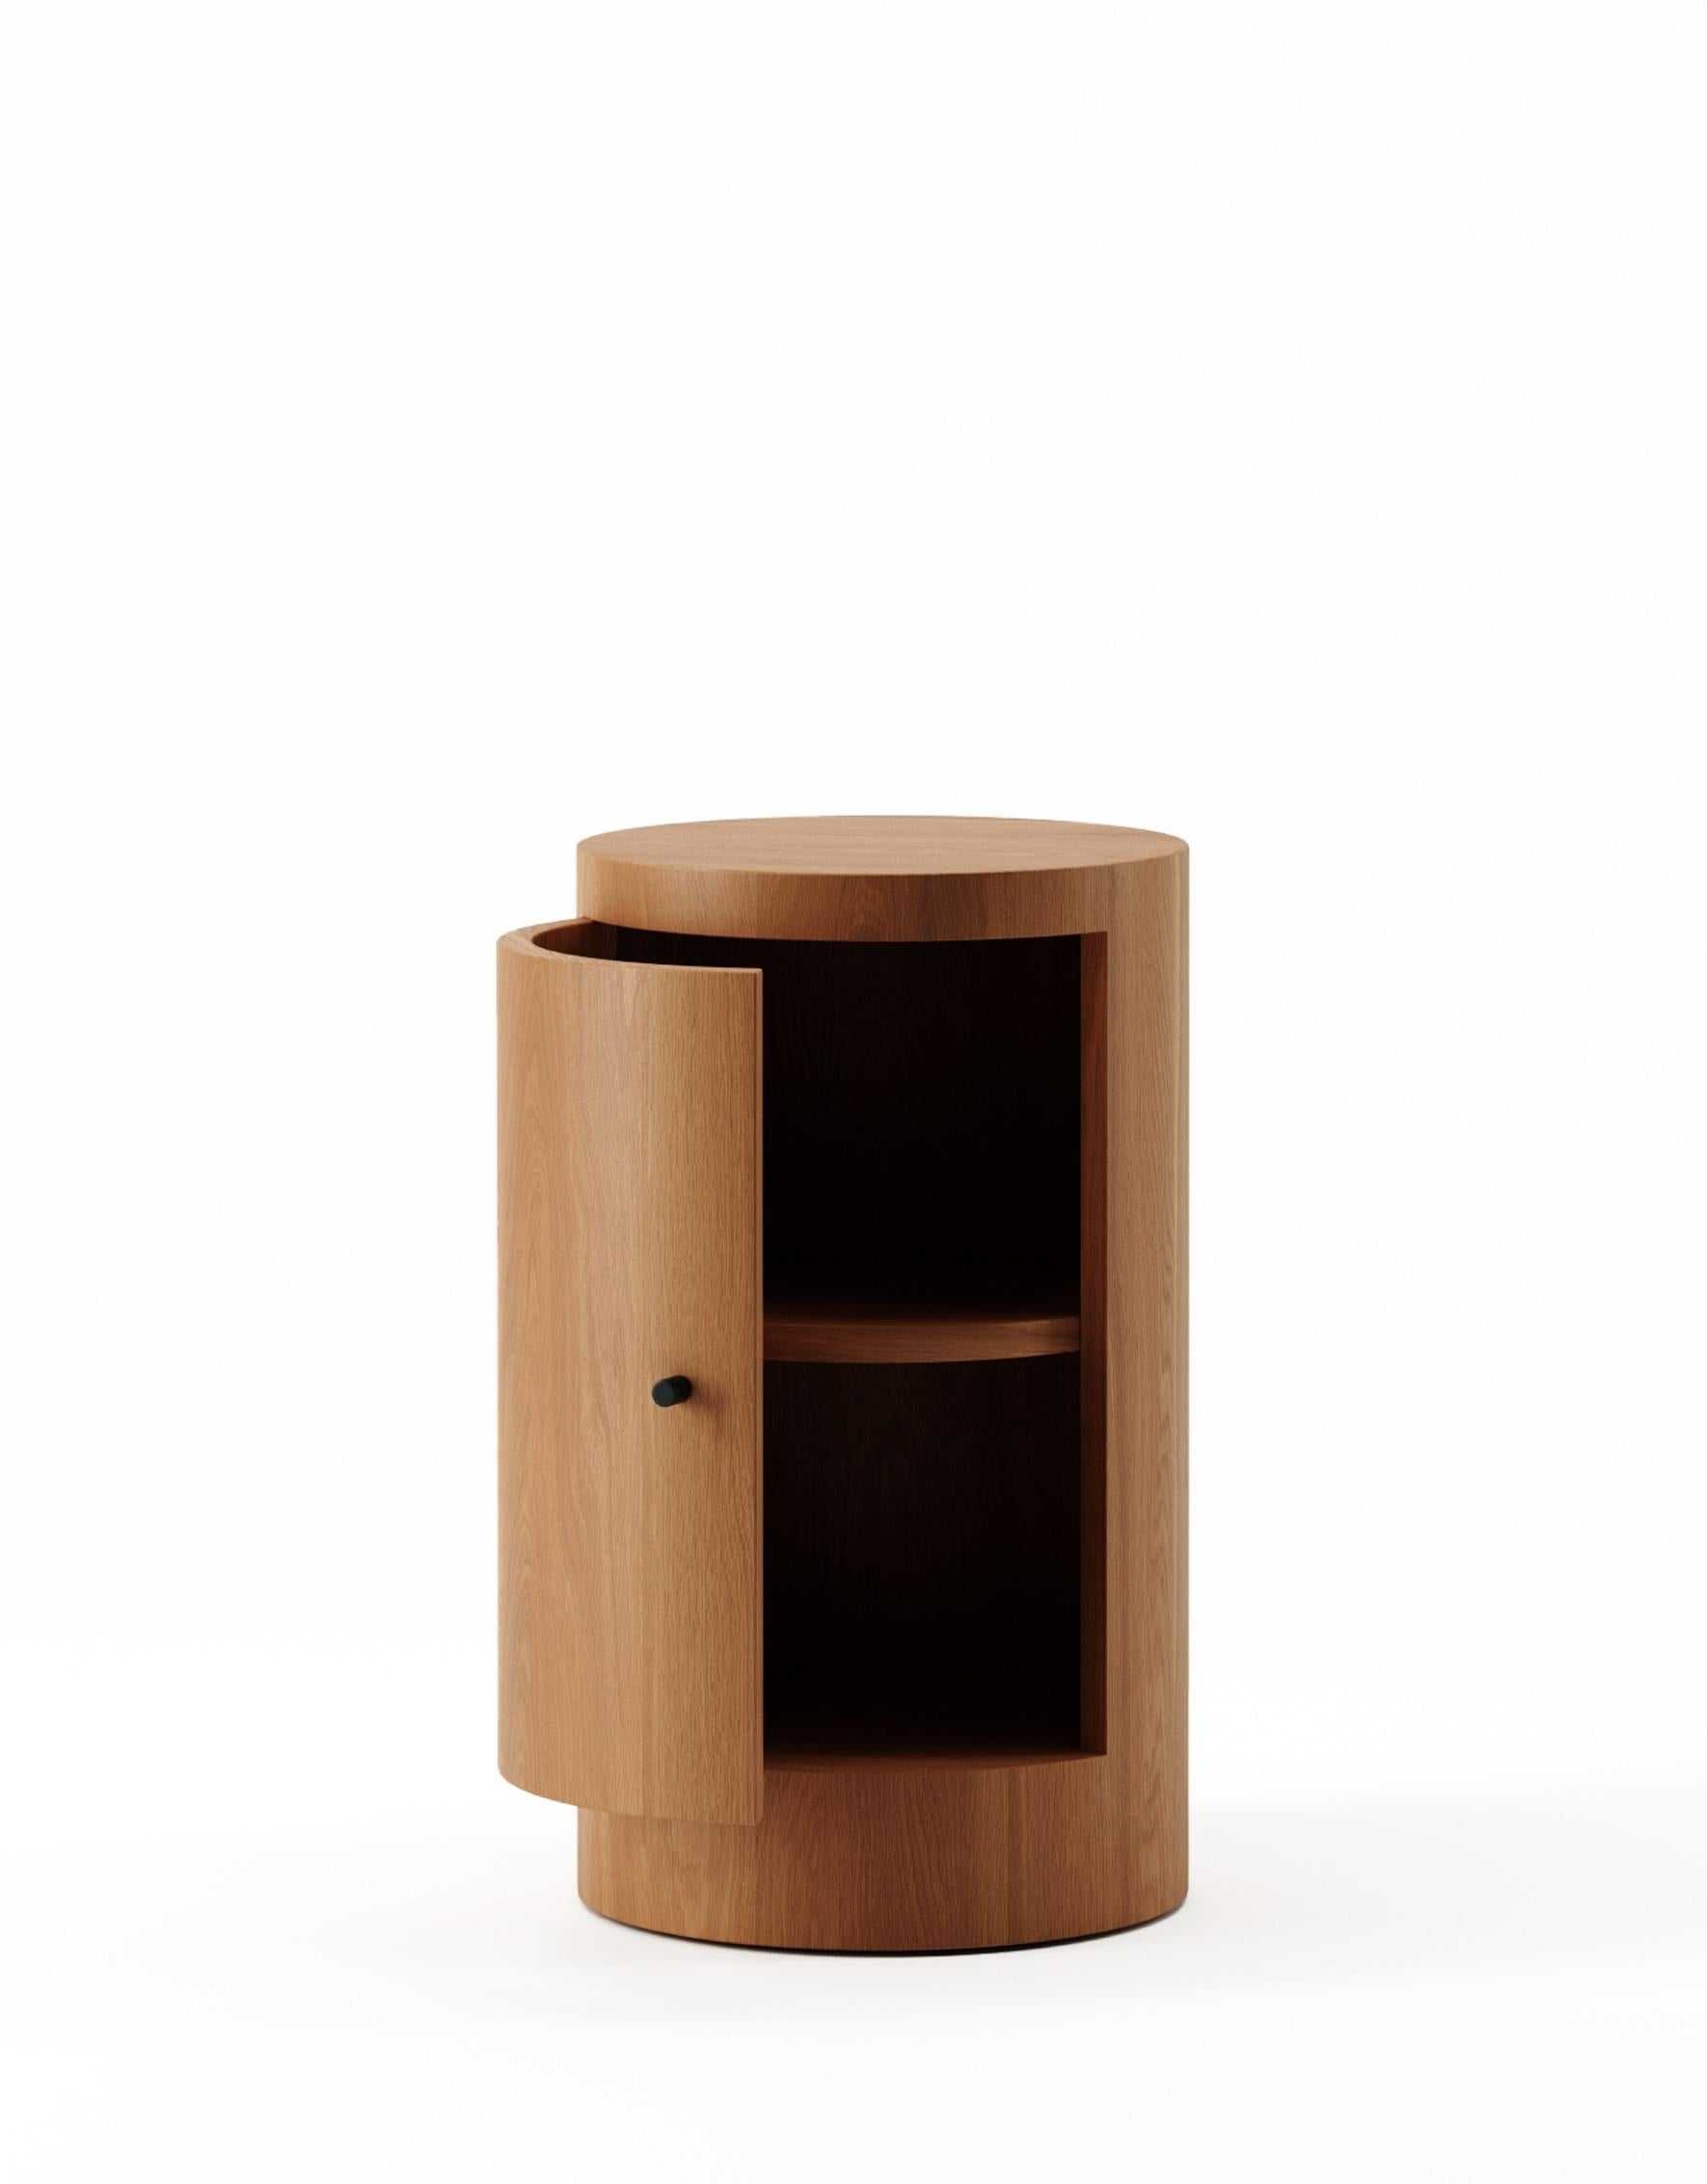 Der von Designer Yaniv Chen entworfene Nachttisch Constant strahlt einen Hauch von raffiniertem Luxus aus und zelebriert die inhärente Pracht von Iroko-Holz. Dieses bemerkenswerte, aus Westafrika stammende Holz hat einen faszinierenden honigfarbenen